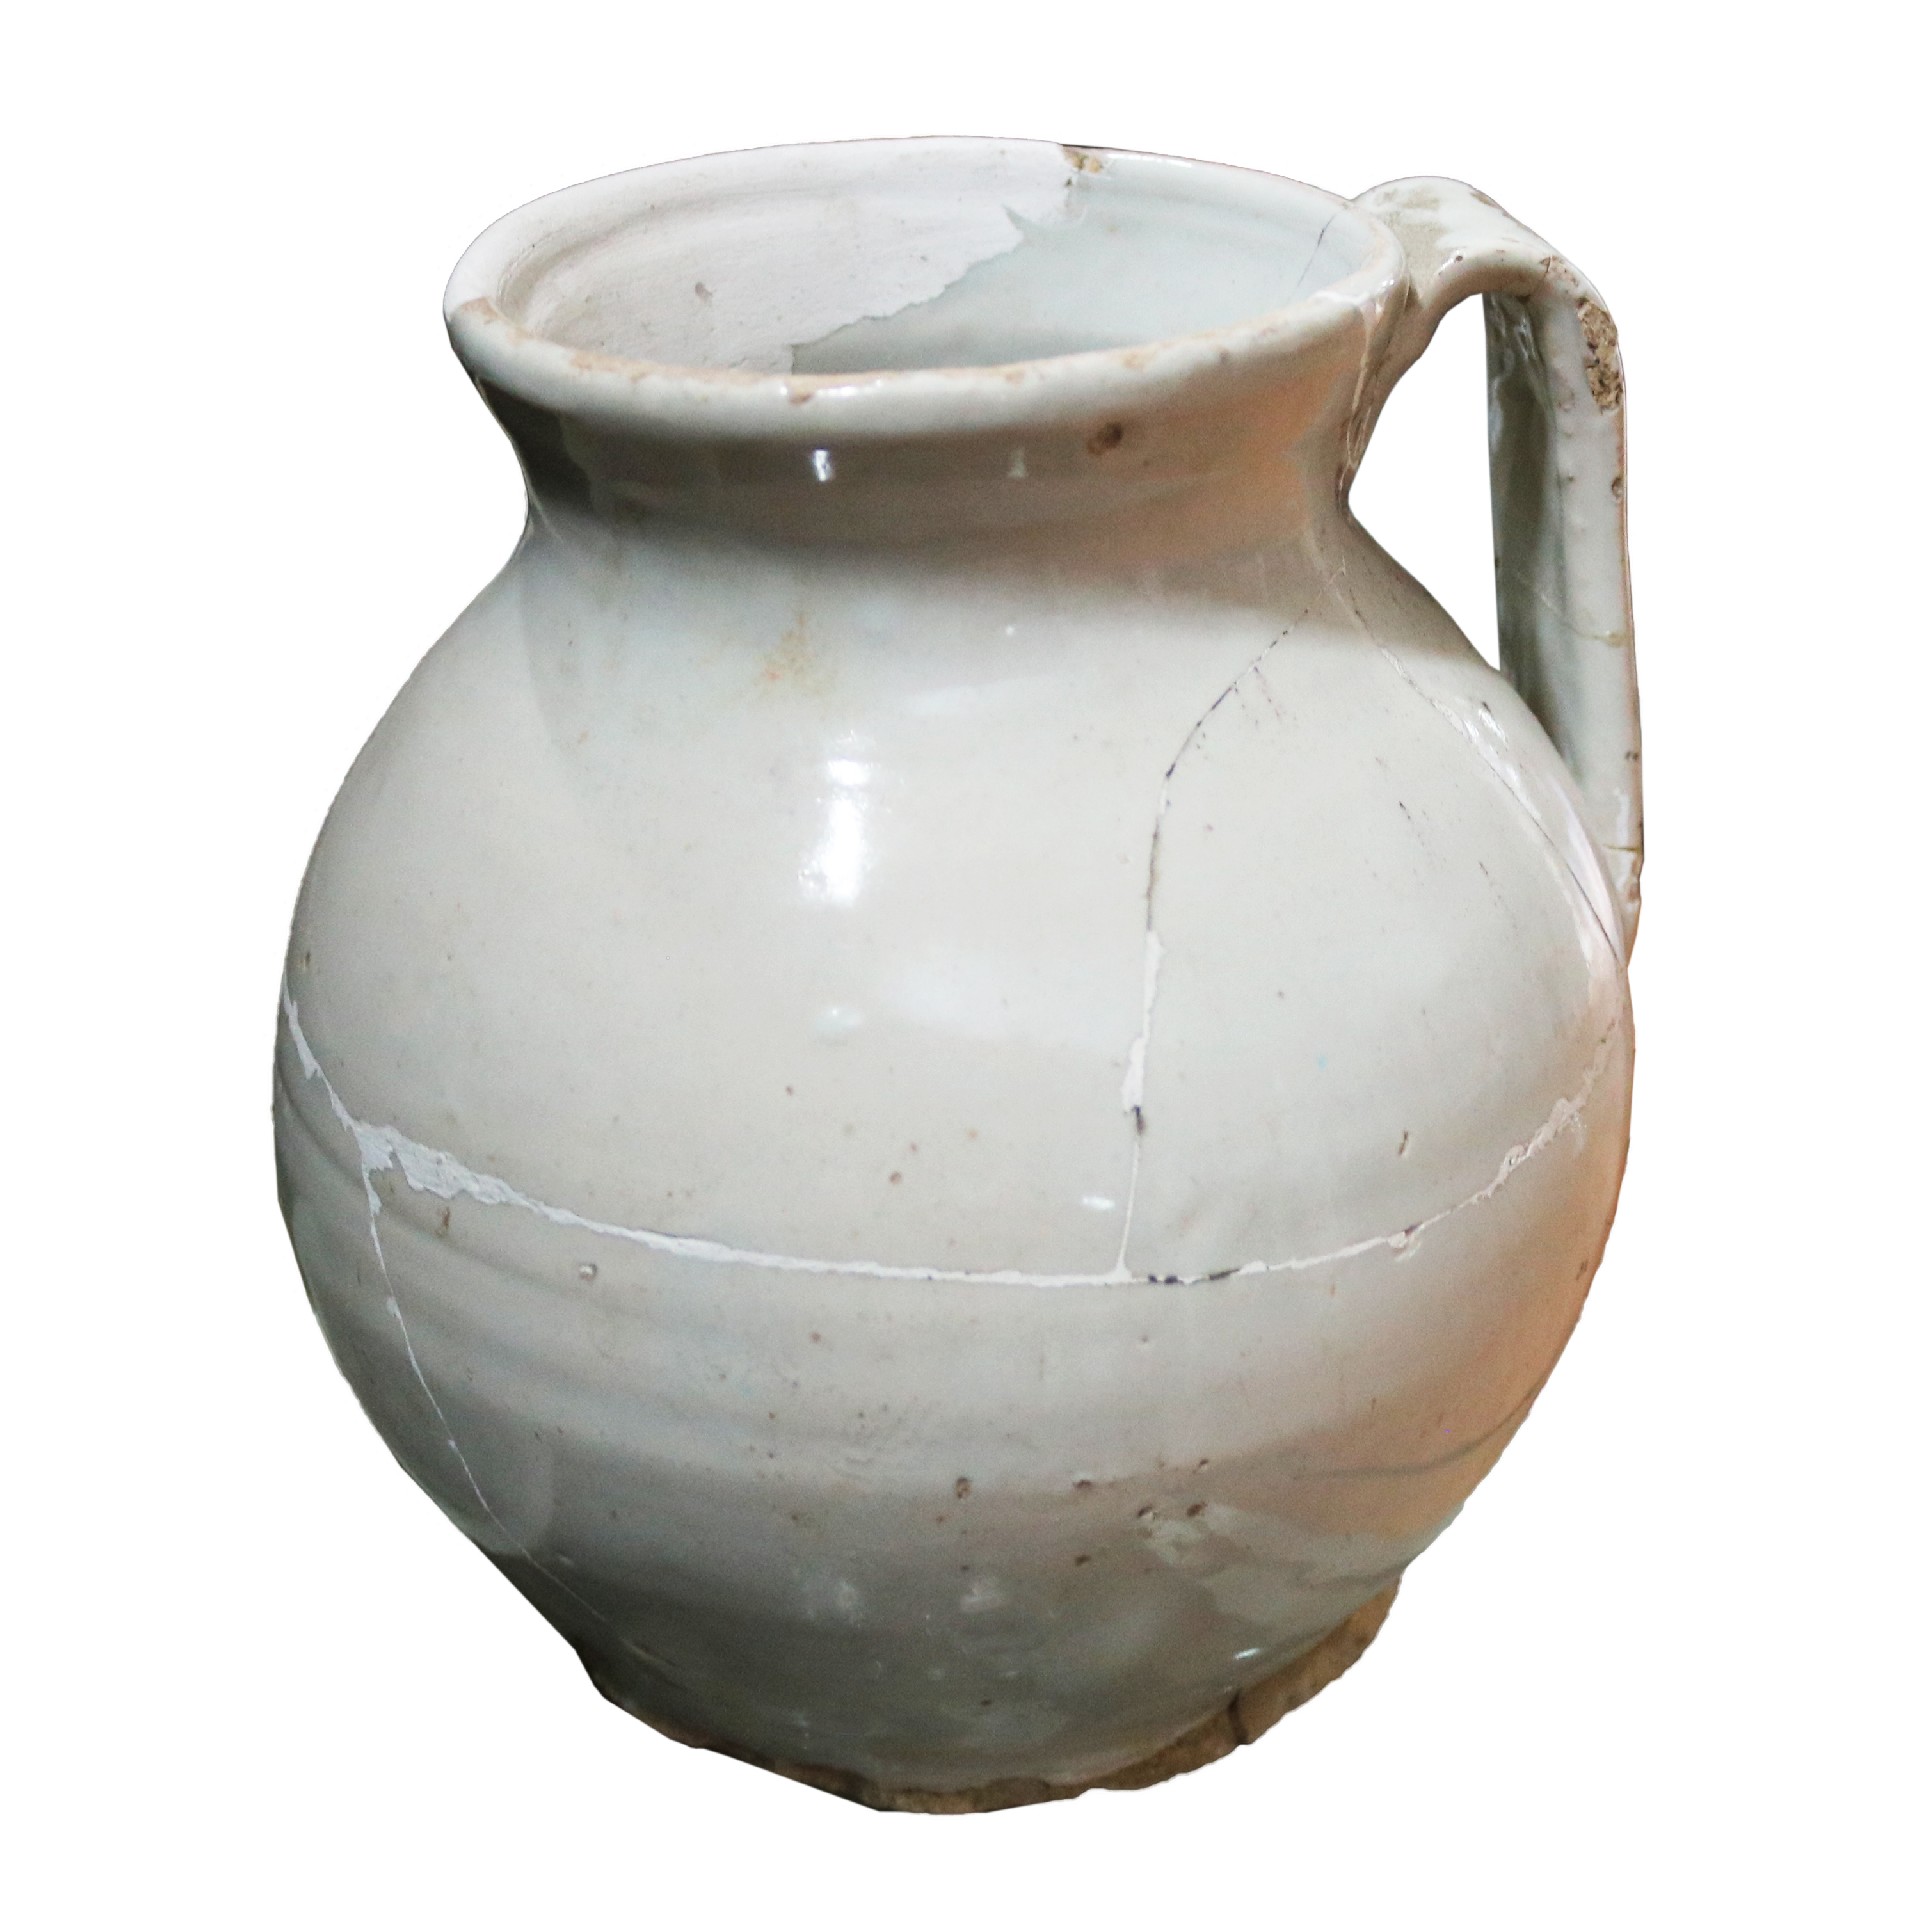 Boccale antico smaltato - Ceramiche - Oggettistica - Prodotti - Antichità Fiorillo